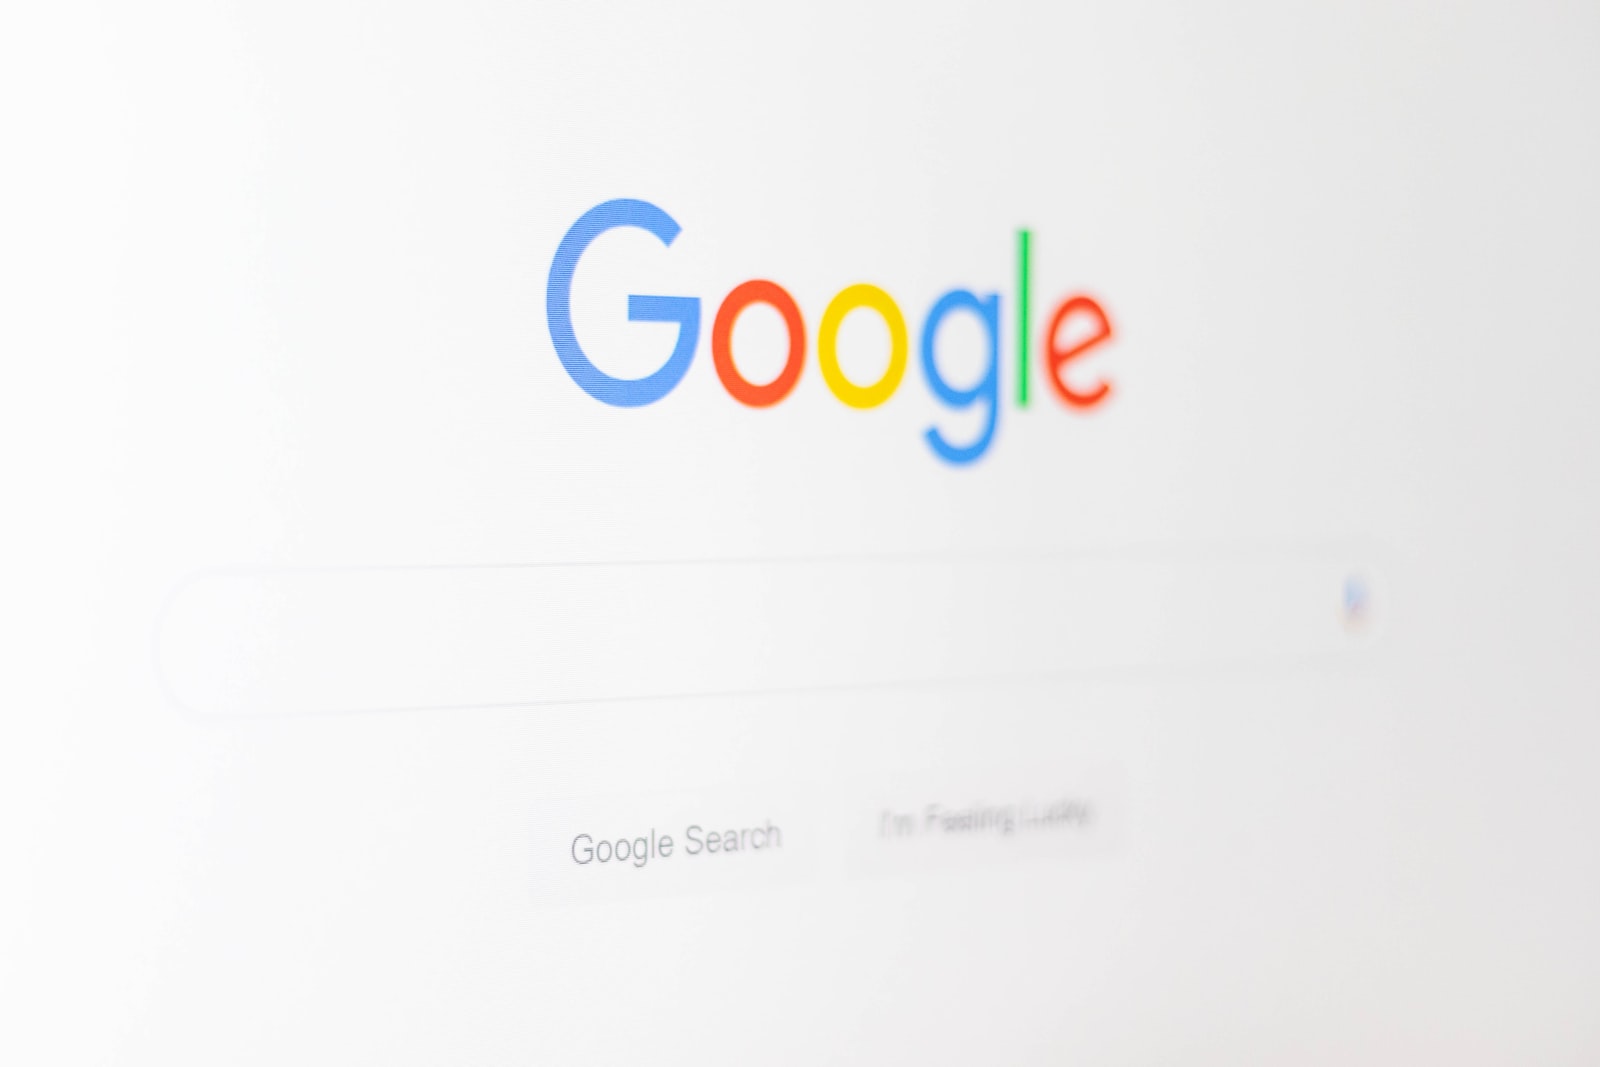 Скрин с логотипом Google